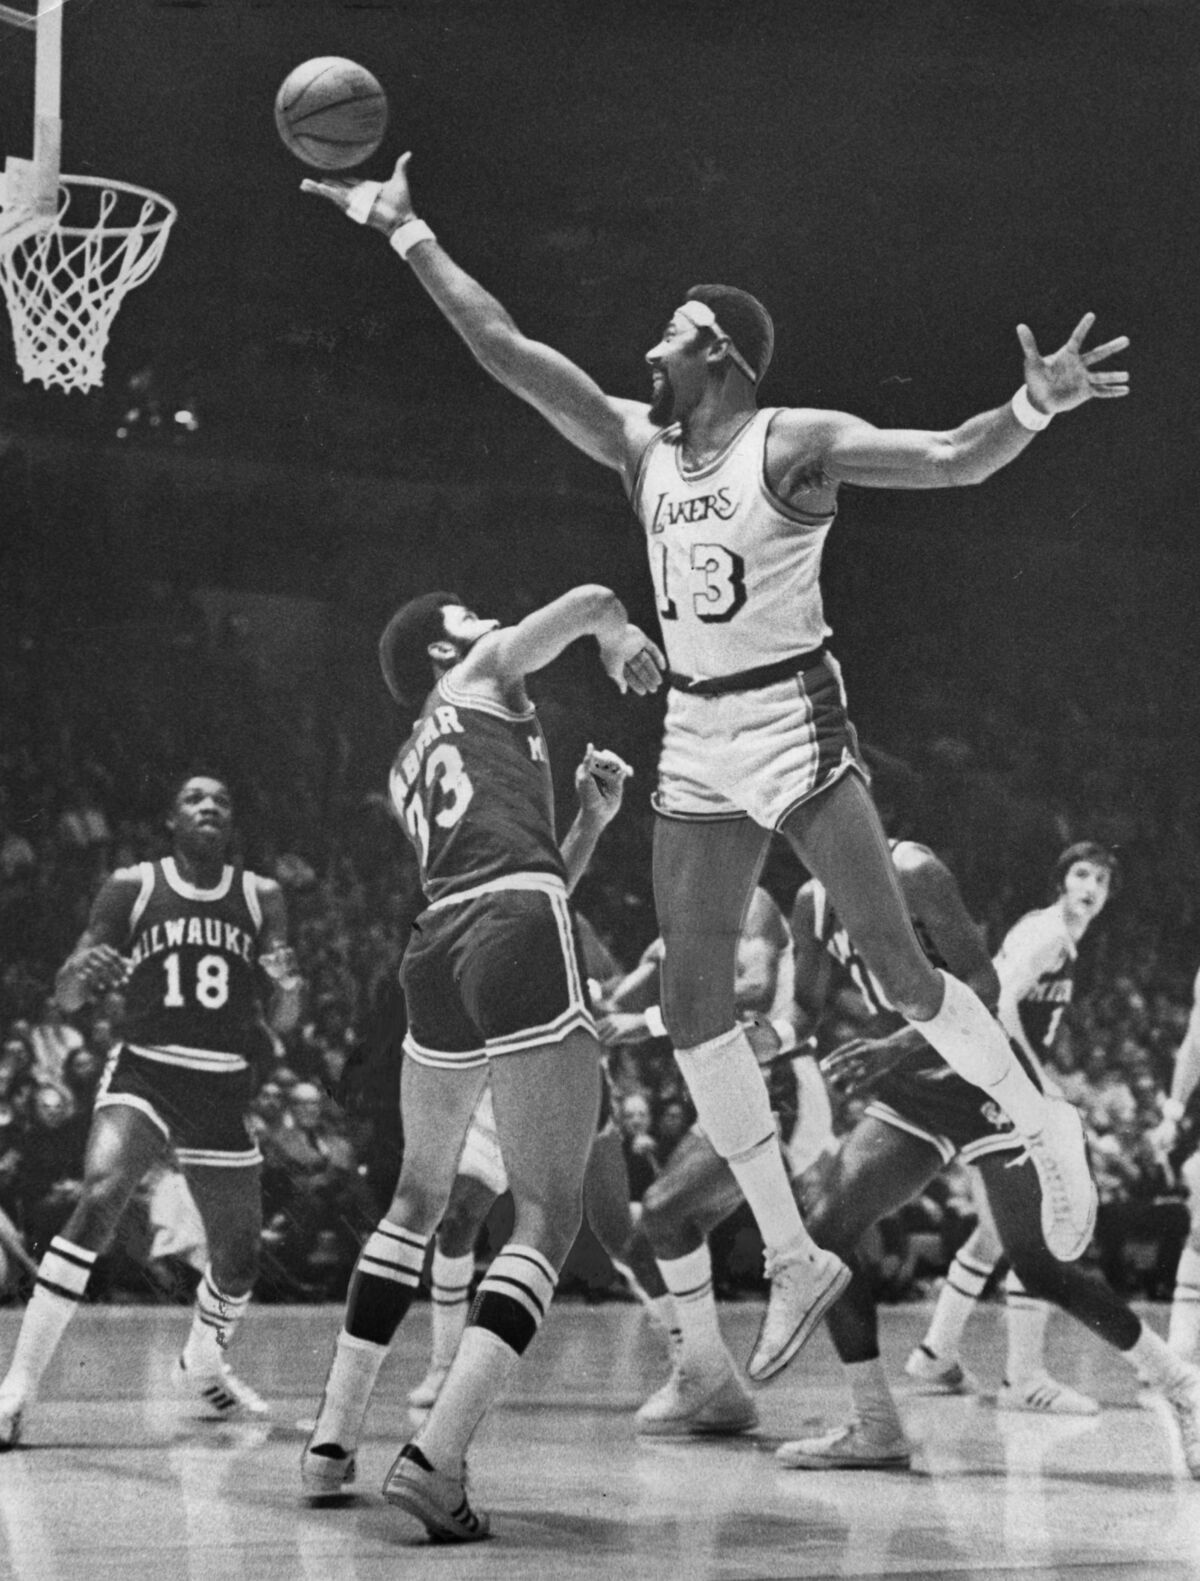 Lakers center Wilt Chamberlain elevates for a shot over Bucks center Kareem Abdul–Jabbar.